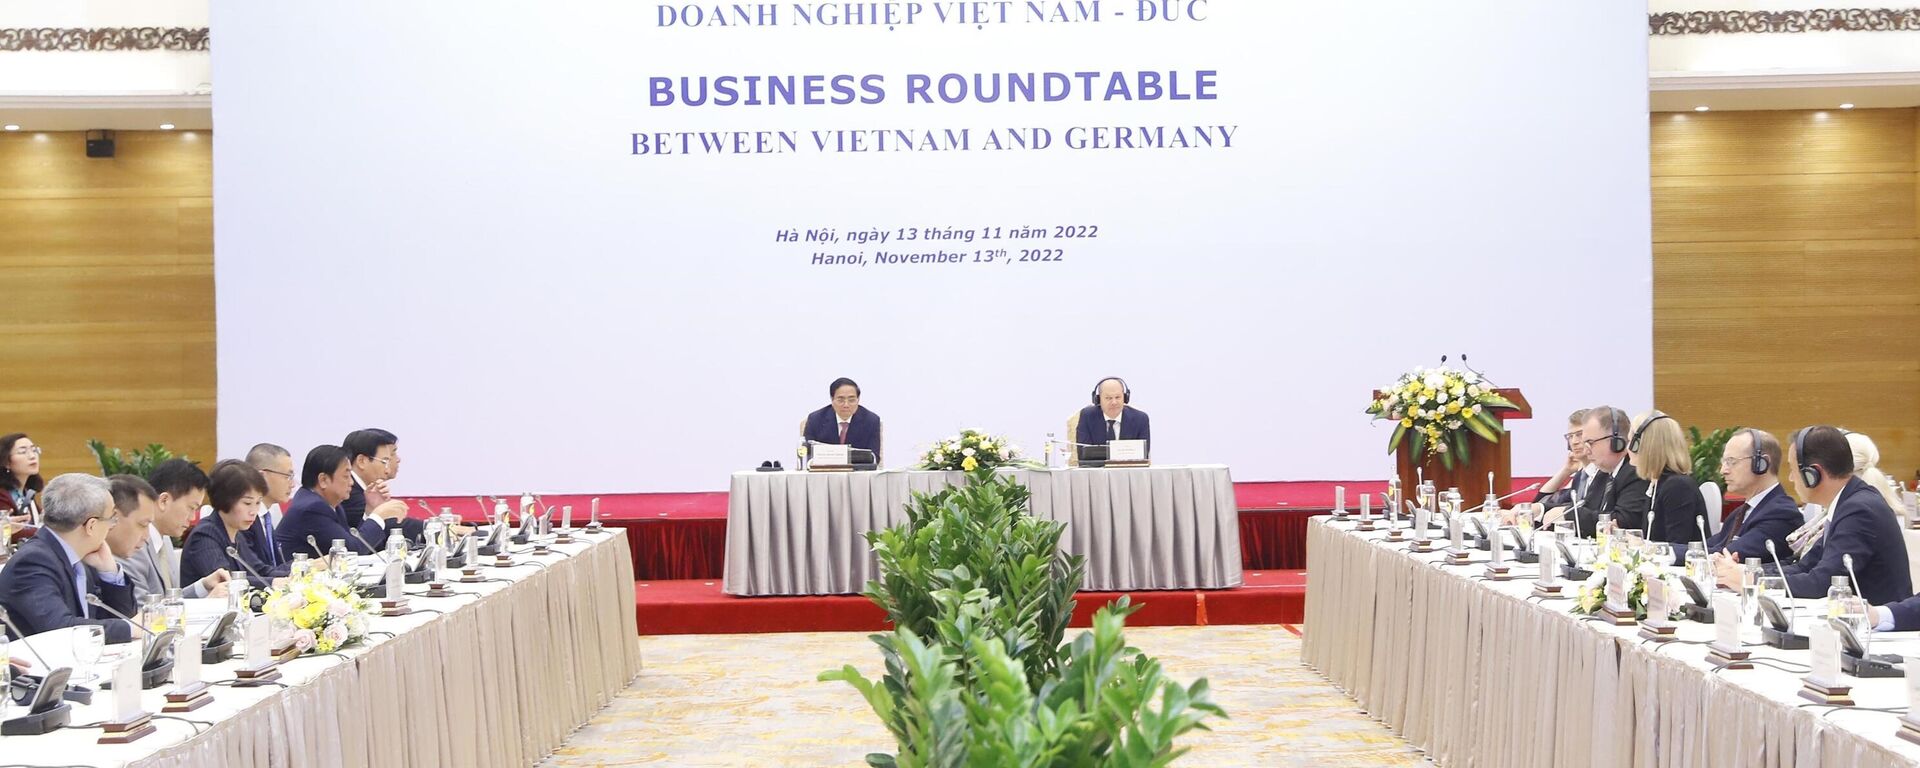 Thủ tướng Chính phủ Phạm Minh Chính và Thủ tướng Đức Olaf Scholz đồng chủ trì Hội nghị với doanh nghiệp Việt Nam - Đức - Sputnik Việt Nam, 1920, 14.11.2022